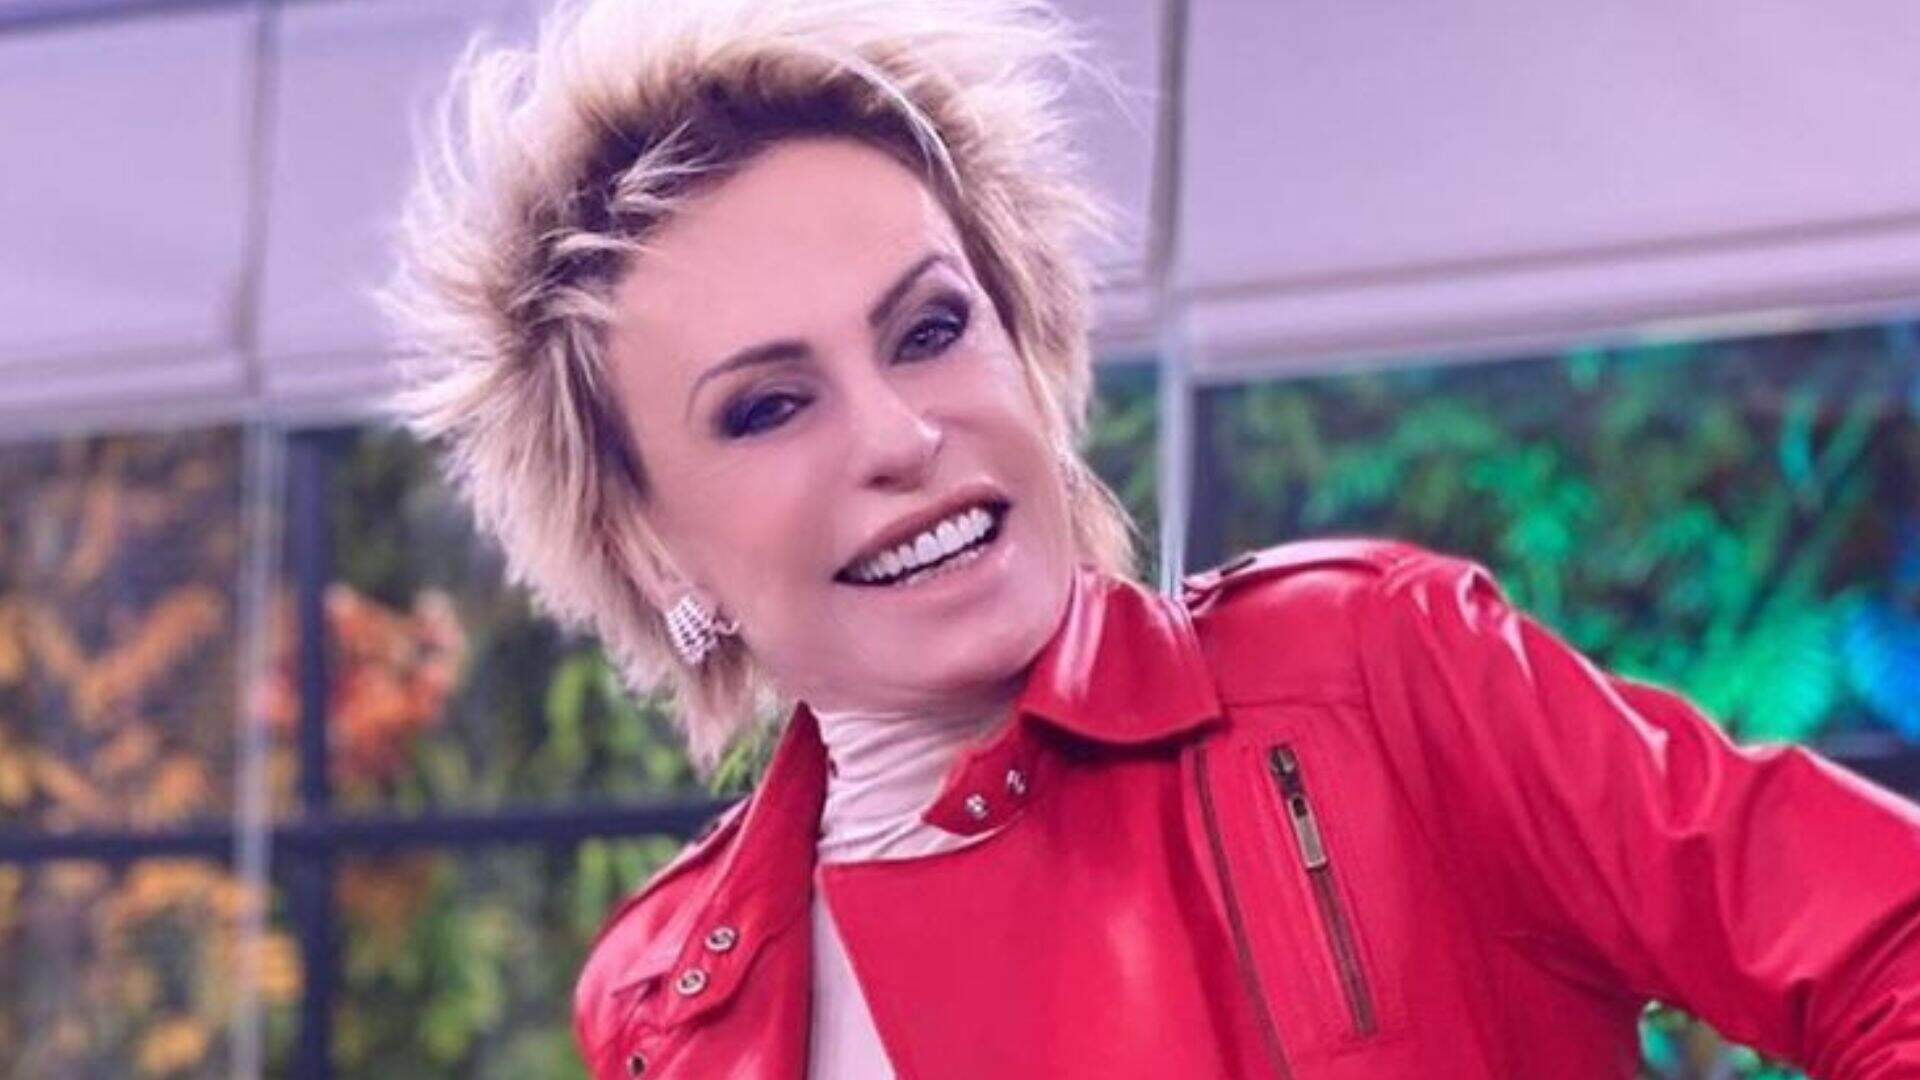 Ana Maria Braga fala pela primeira vez sobre namorado: “Era o dia mais esperado” - Metropolitana FM